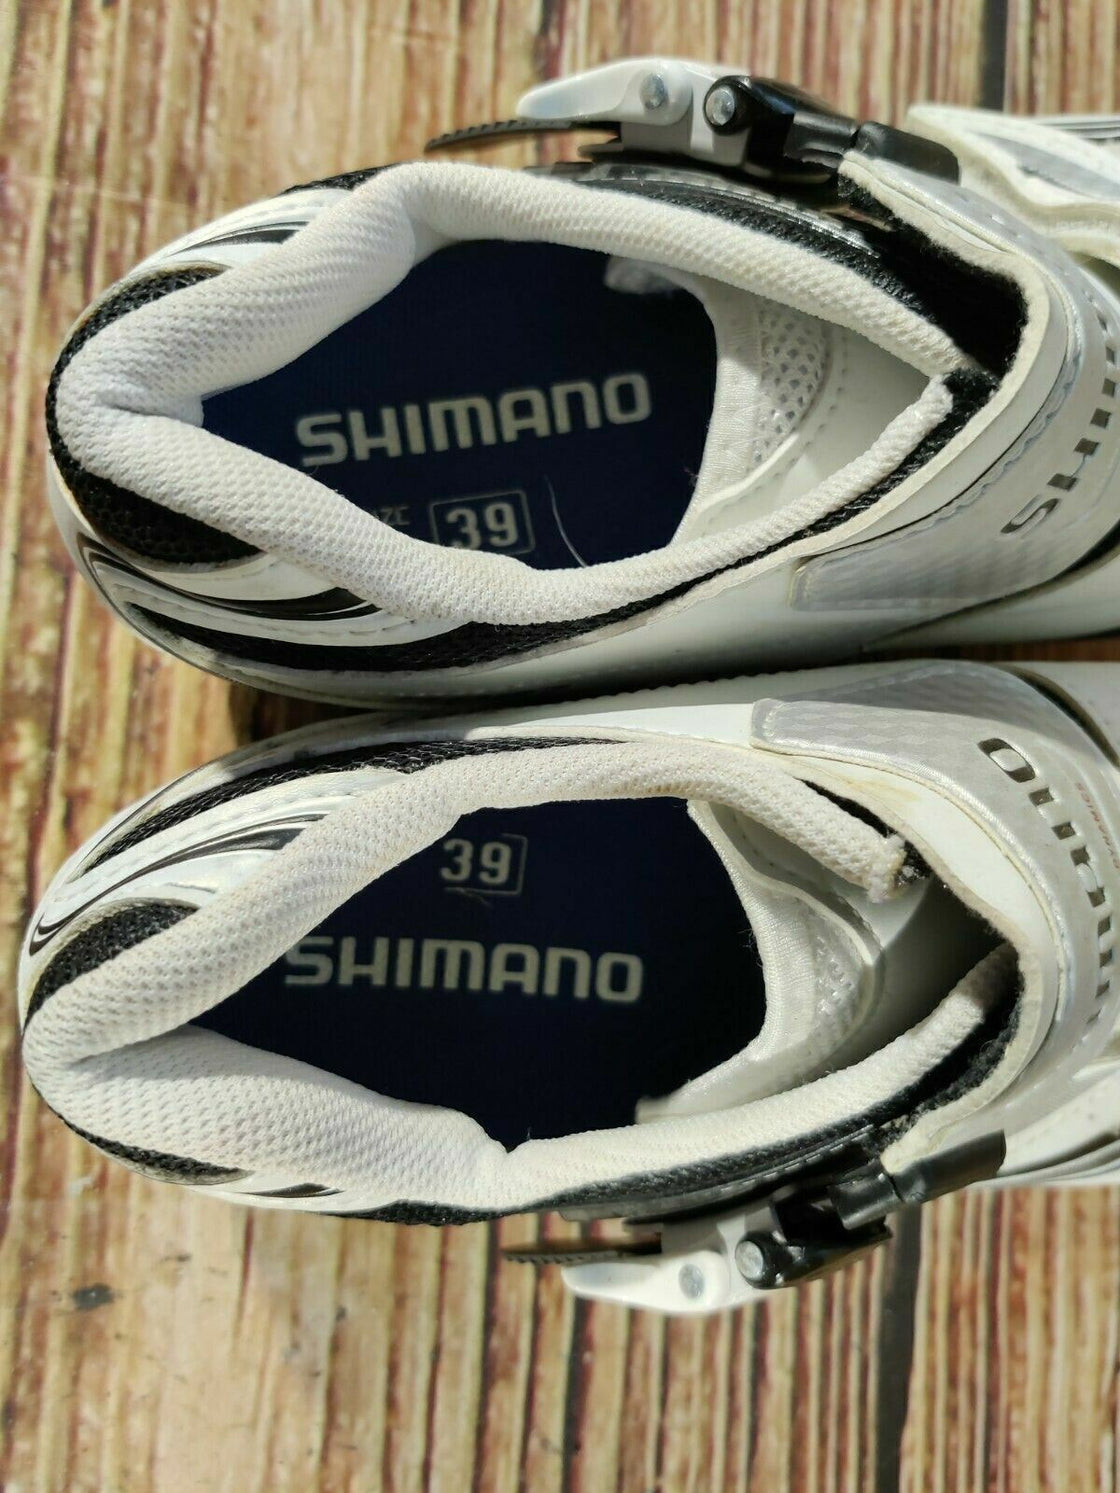 SHIMANO R087 Road Cycling Shoes Bicycle Shoes Size EU39 Road bike shoes